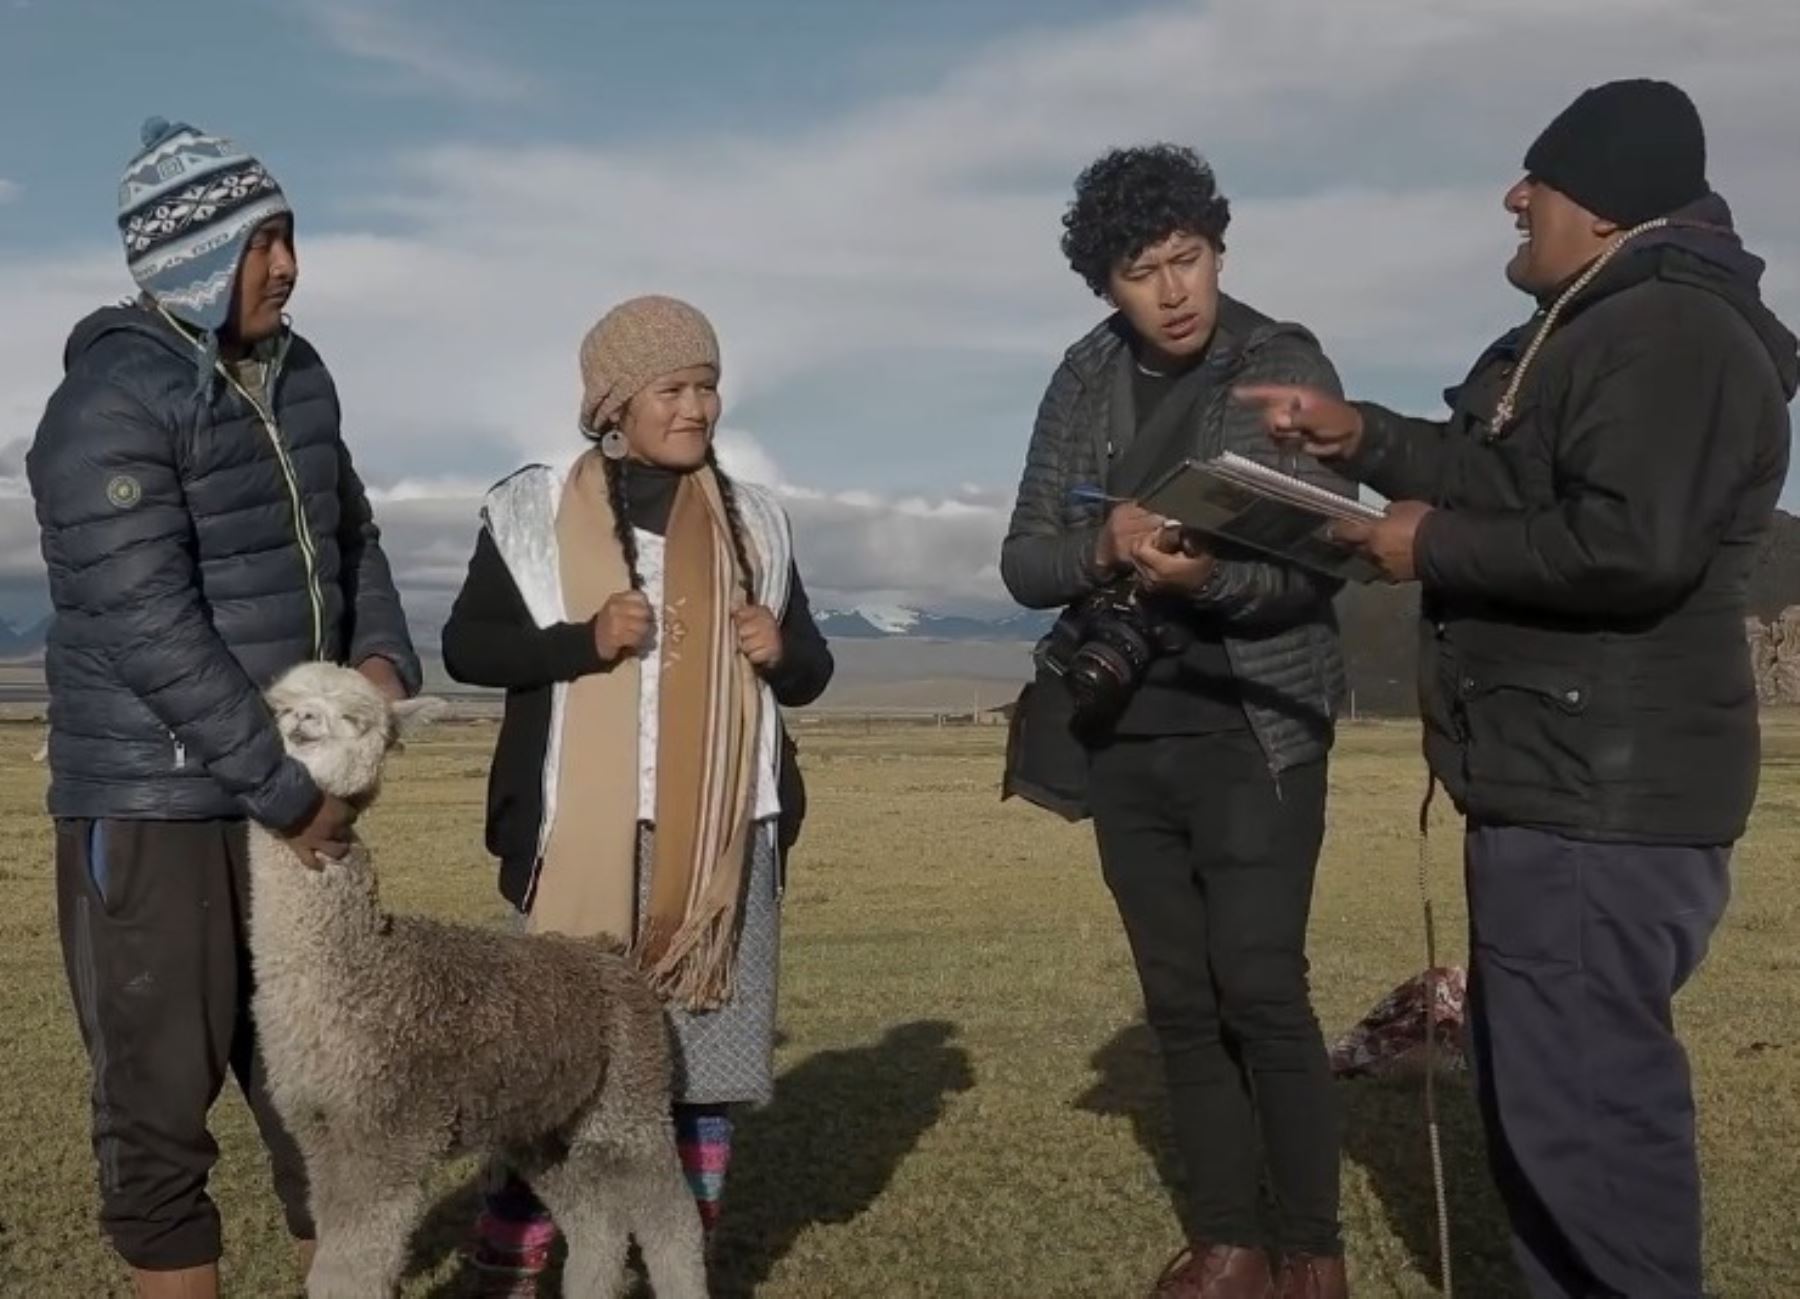 Programa ProInnóvate del Ministerio de la Producción cofinanció el documental que resalta la práctica de mejoramiento genético de la alpaca en comunidades de Puno.